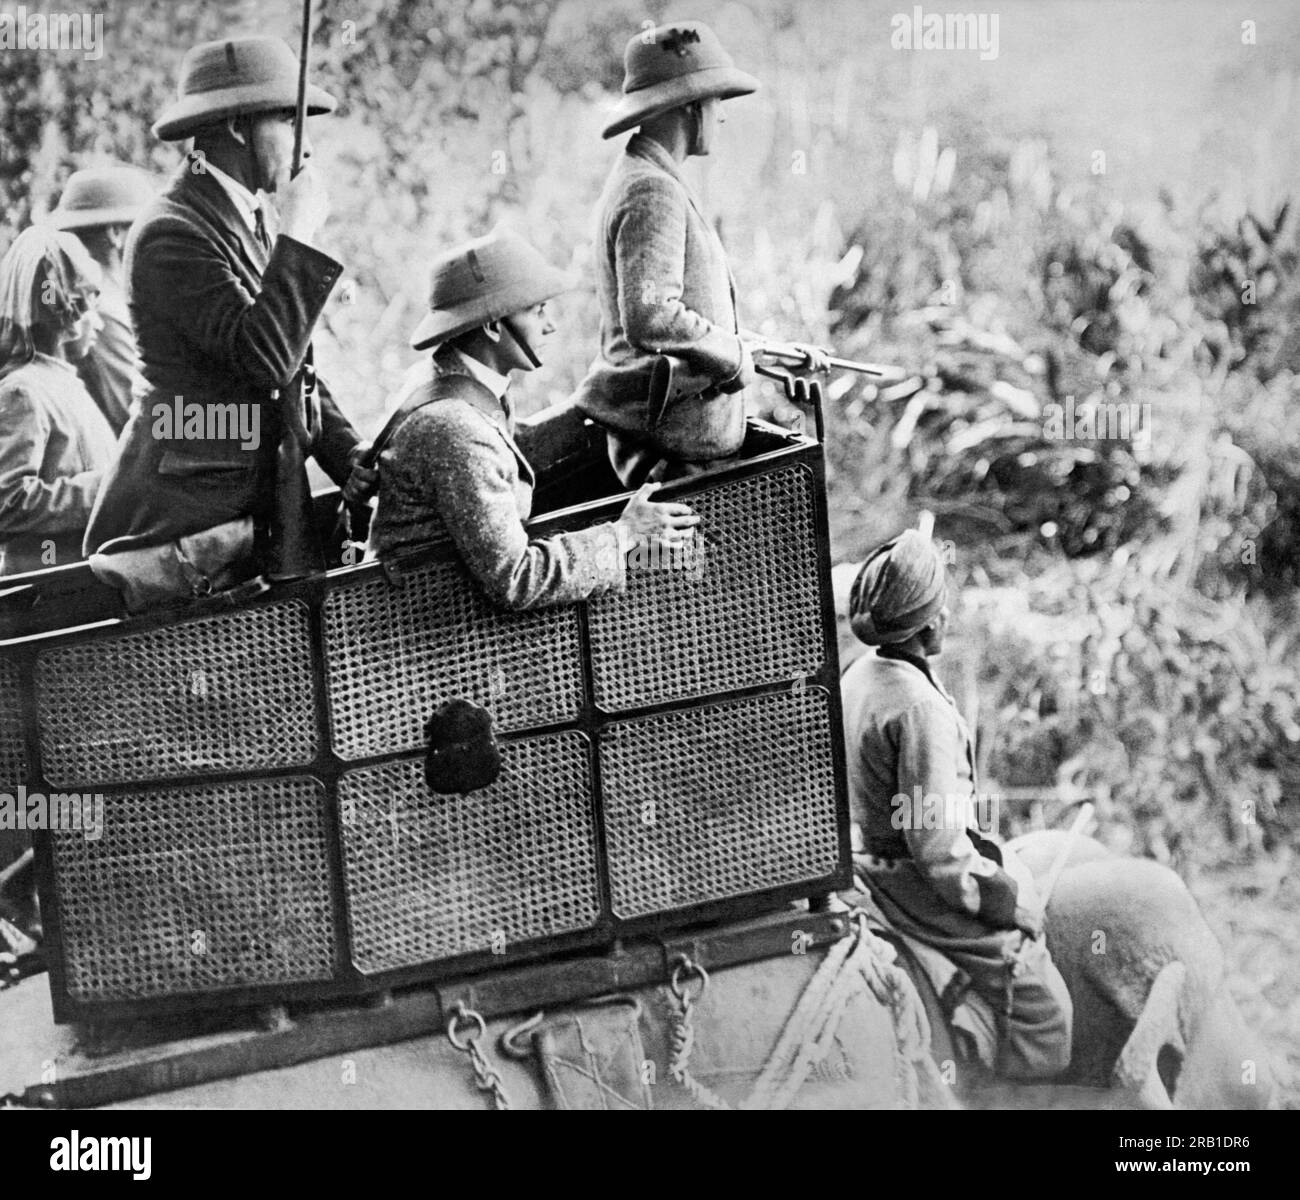 Népal : 29 janvier 1922 le prince de Galles regarde de son howdah au sommet d'un éléphant pour tout gros gibier pour briser la couverture pendant son expédition de chasse dans les jungles du Népal. Ses chargeurs d'armes à feu sont dans le howdah avec lui. Banque D'Images